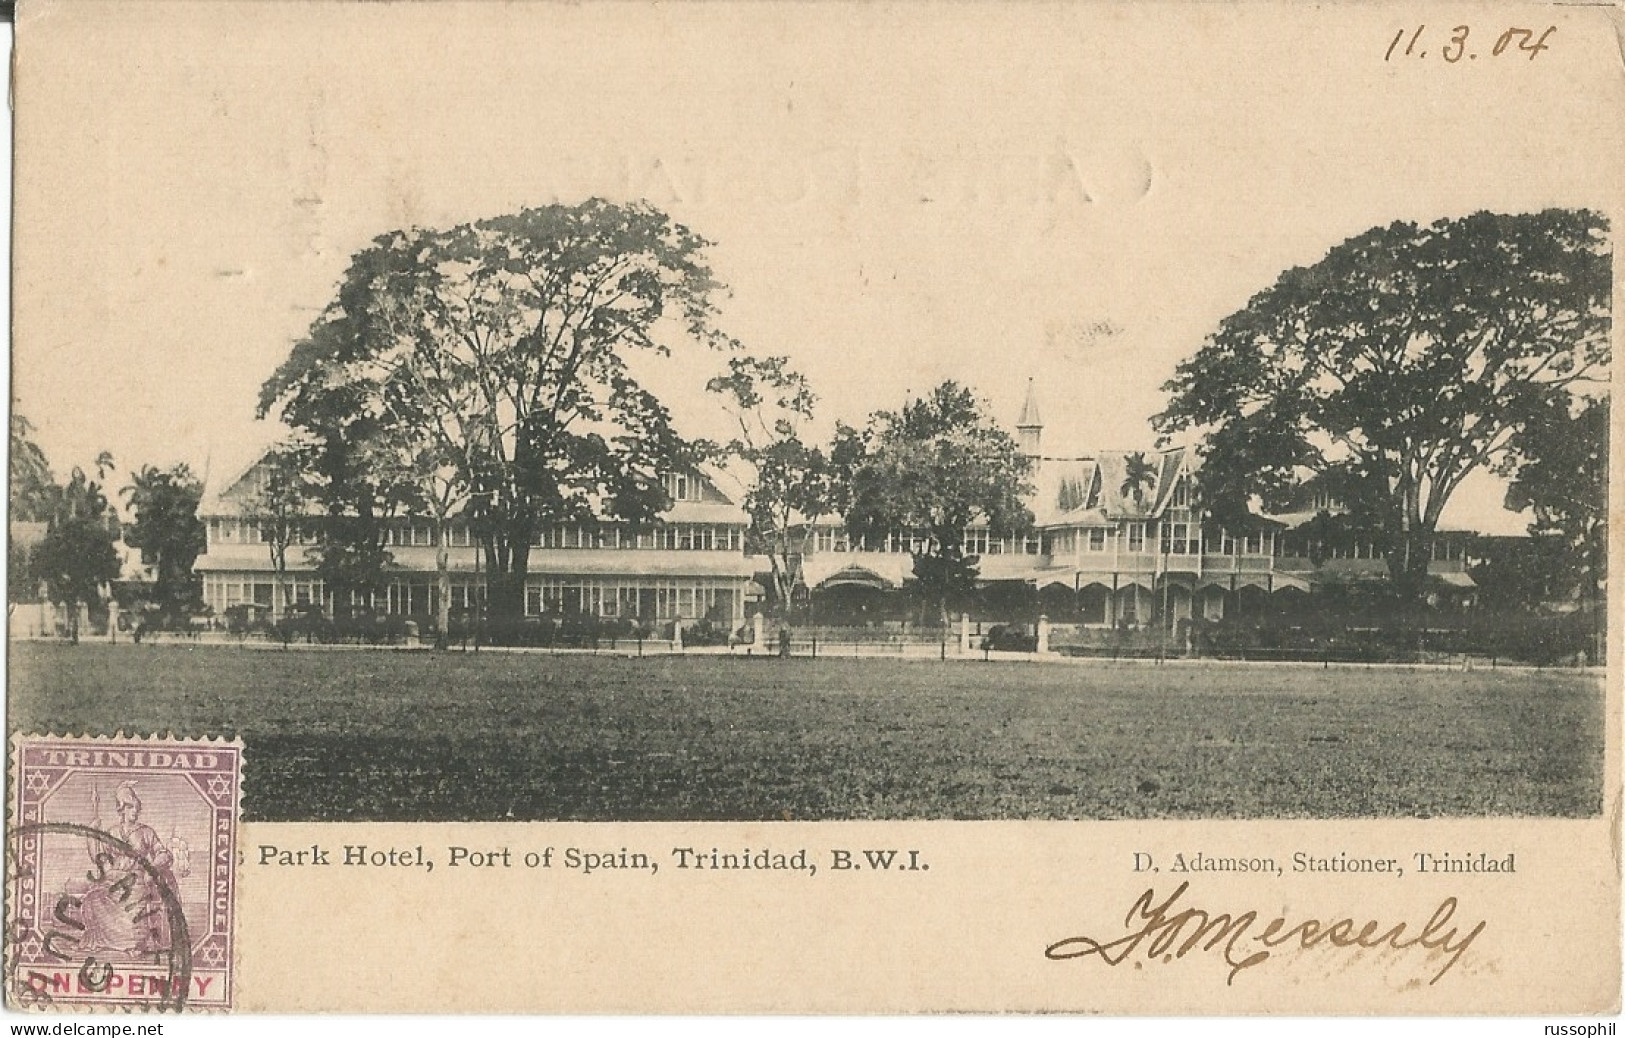 TRINIDAD - QUEEN'S PARK HOTEL, PORT OF SPAIN, B.W.I. - PUB. BY ADAMSON - 1904 - Trinidad